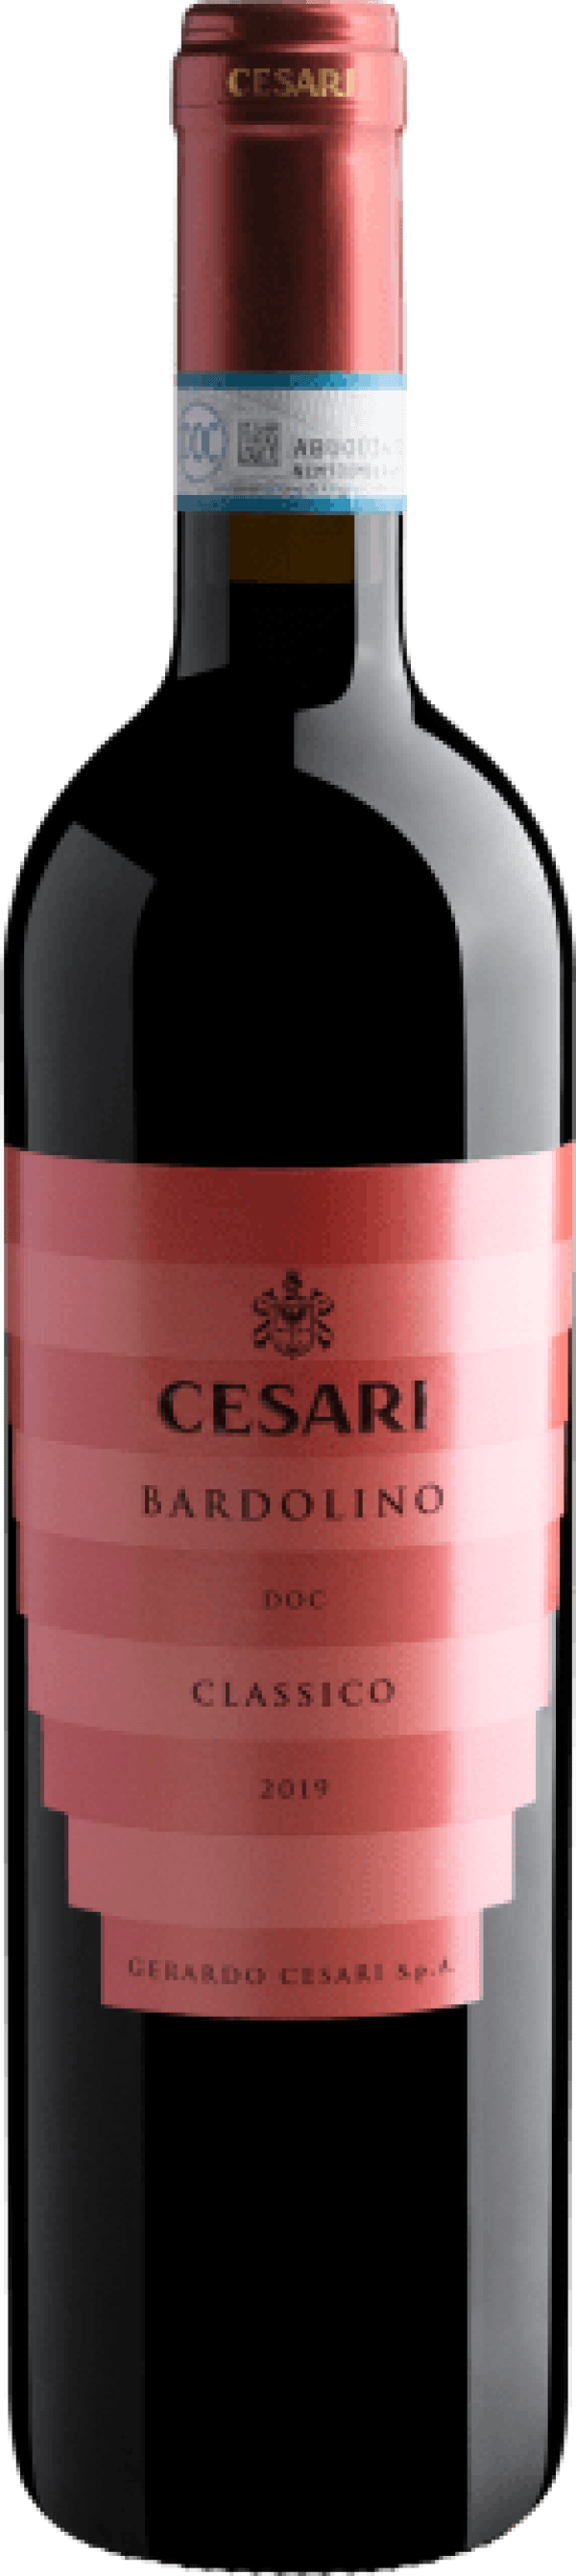 Cesari Bardolino Classico DOC 2019